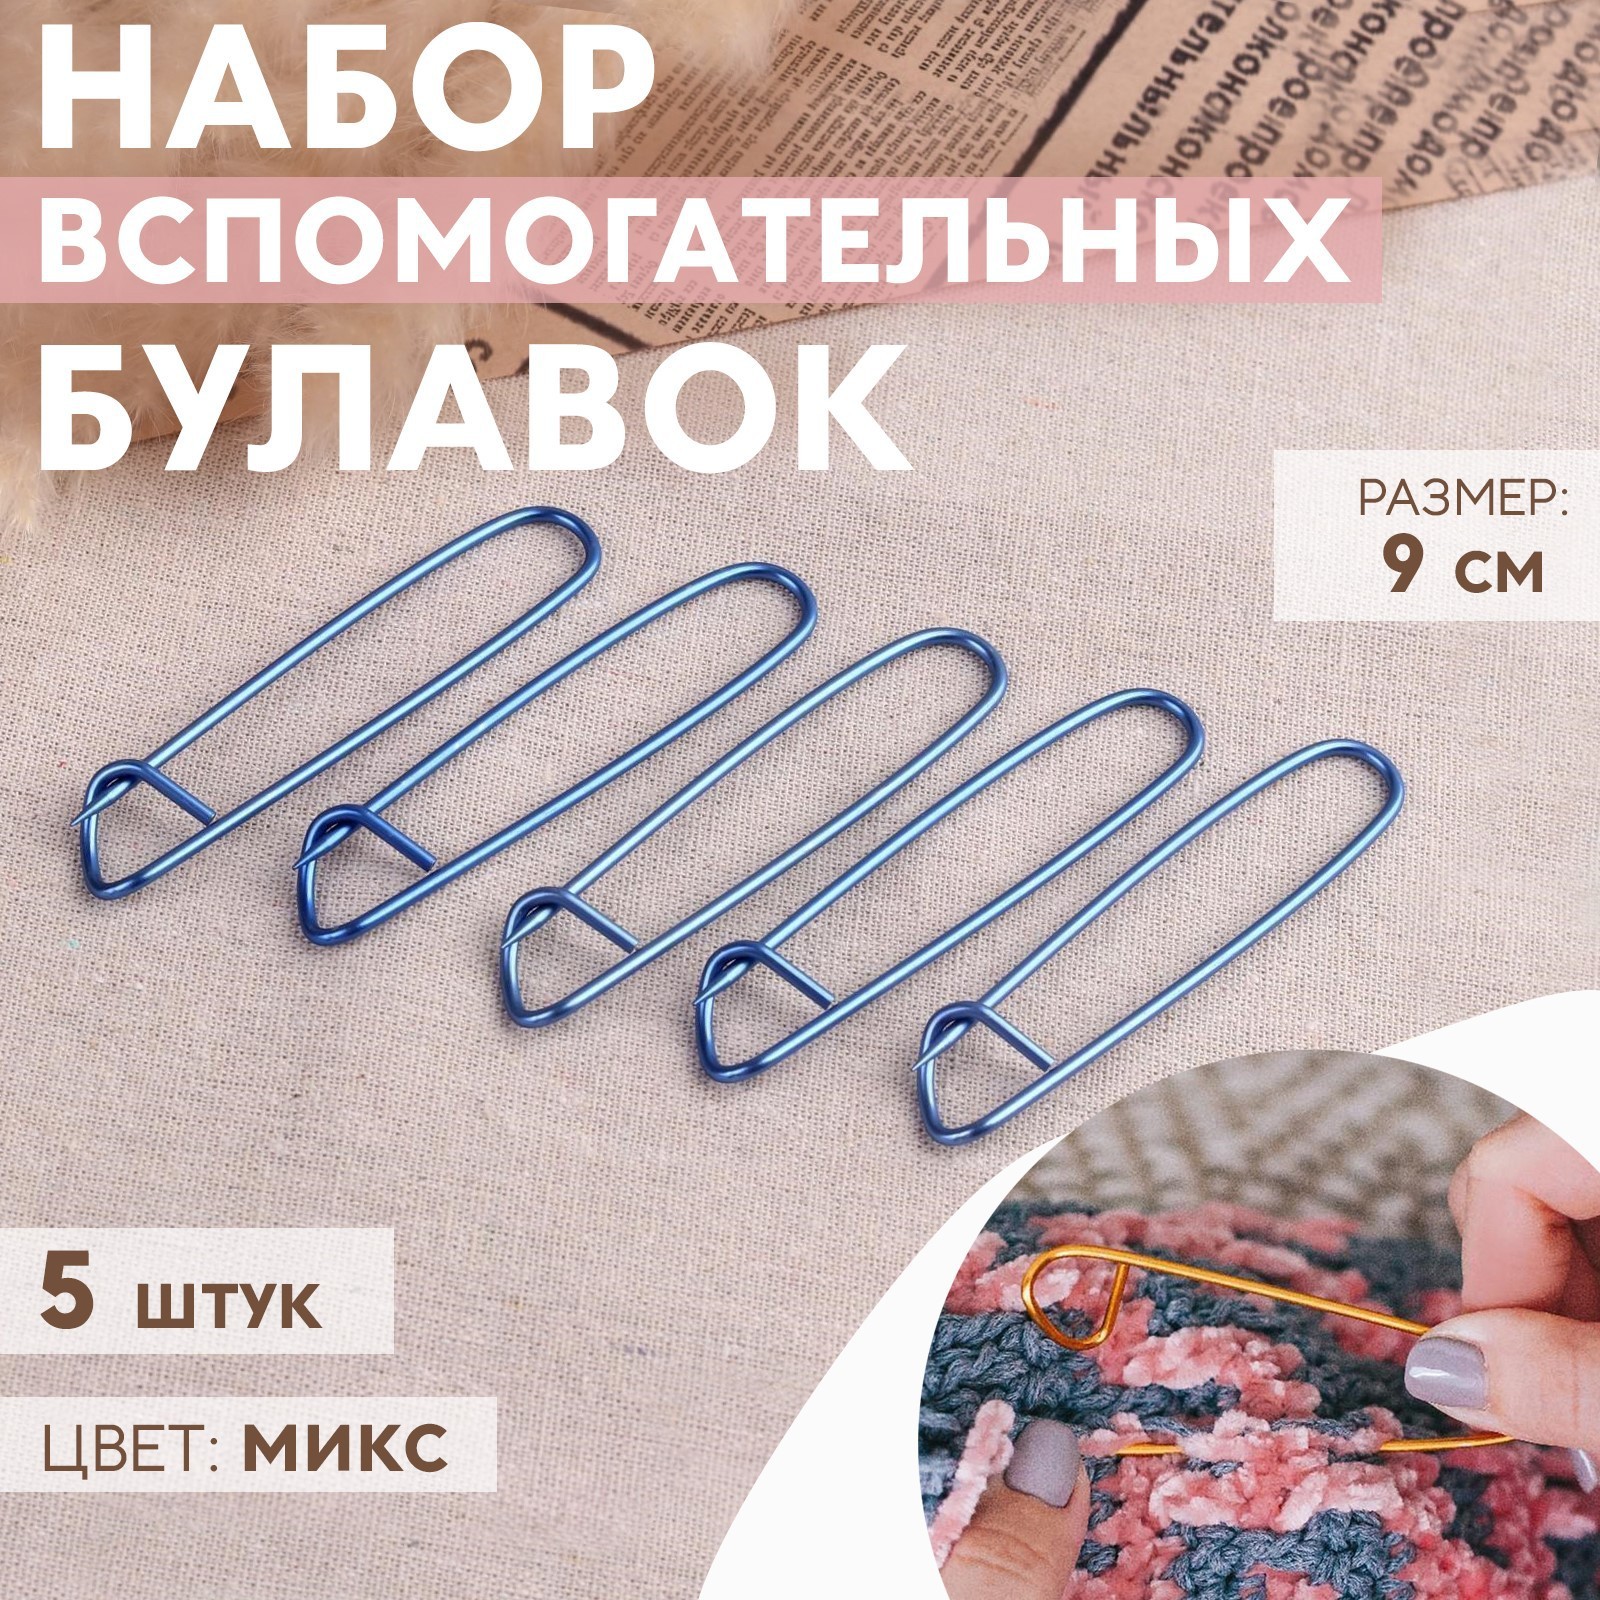 Набор вспомогательных булавок для вязания, 9 см, 5 шт, цвет МИКС (1053269)- Купить по цене от 80.00 руб.